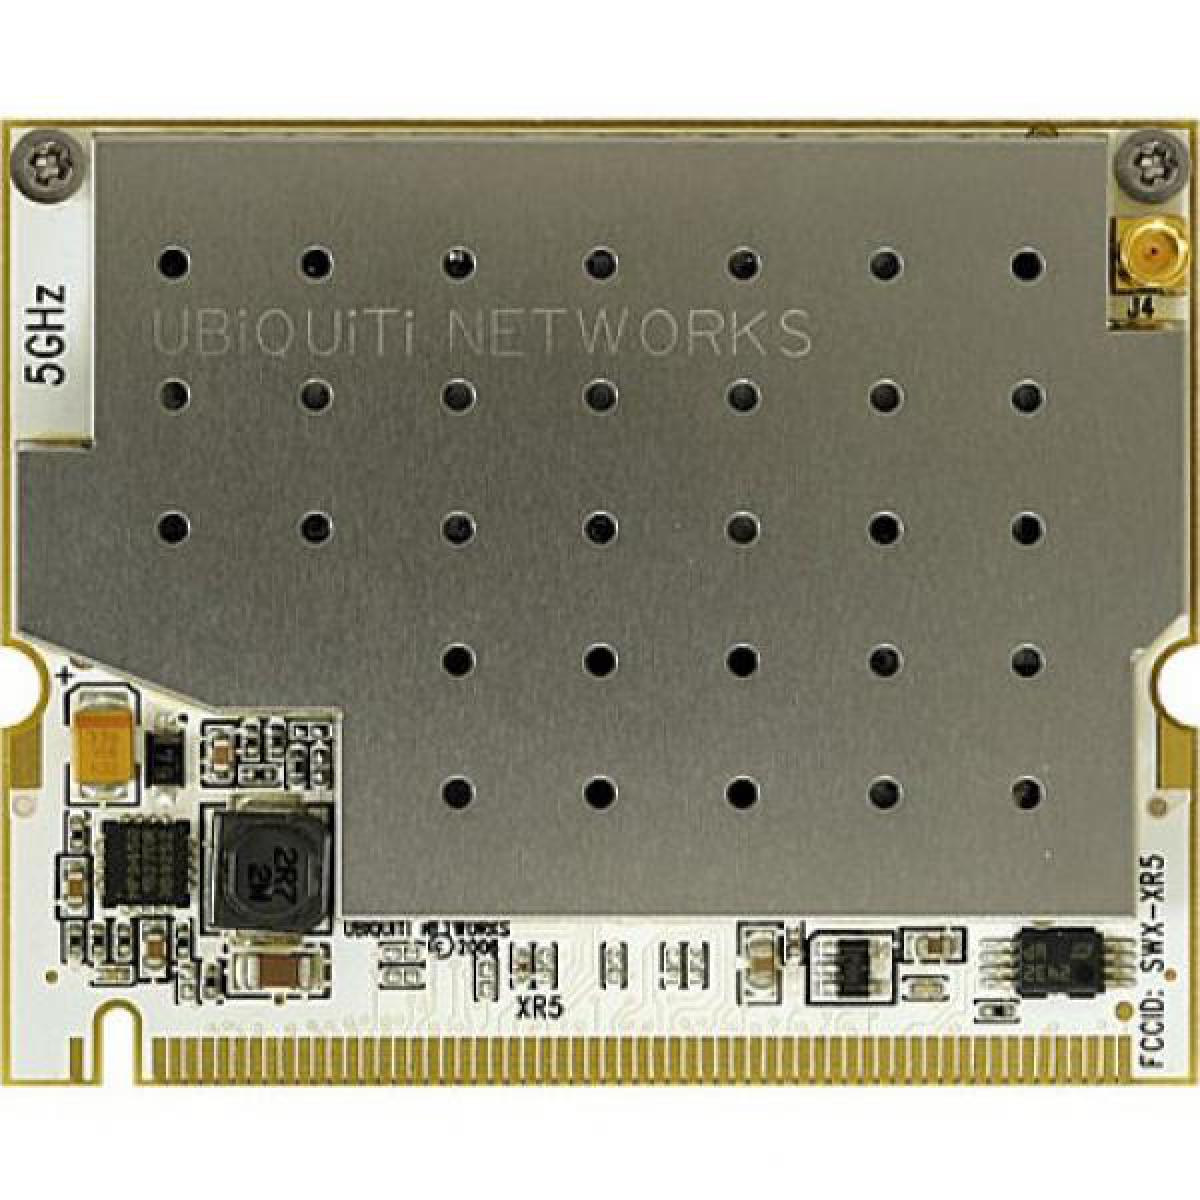 Ubiquiti - MINI PCI RADIO UBIQUITI XR5 UNIFI XTREMERANGE 5GHZ - Bracelet connecté